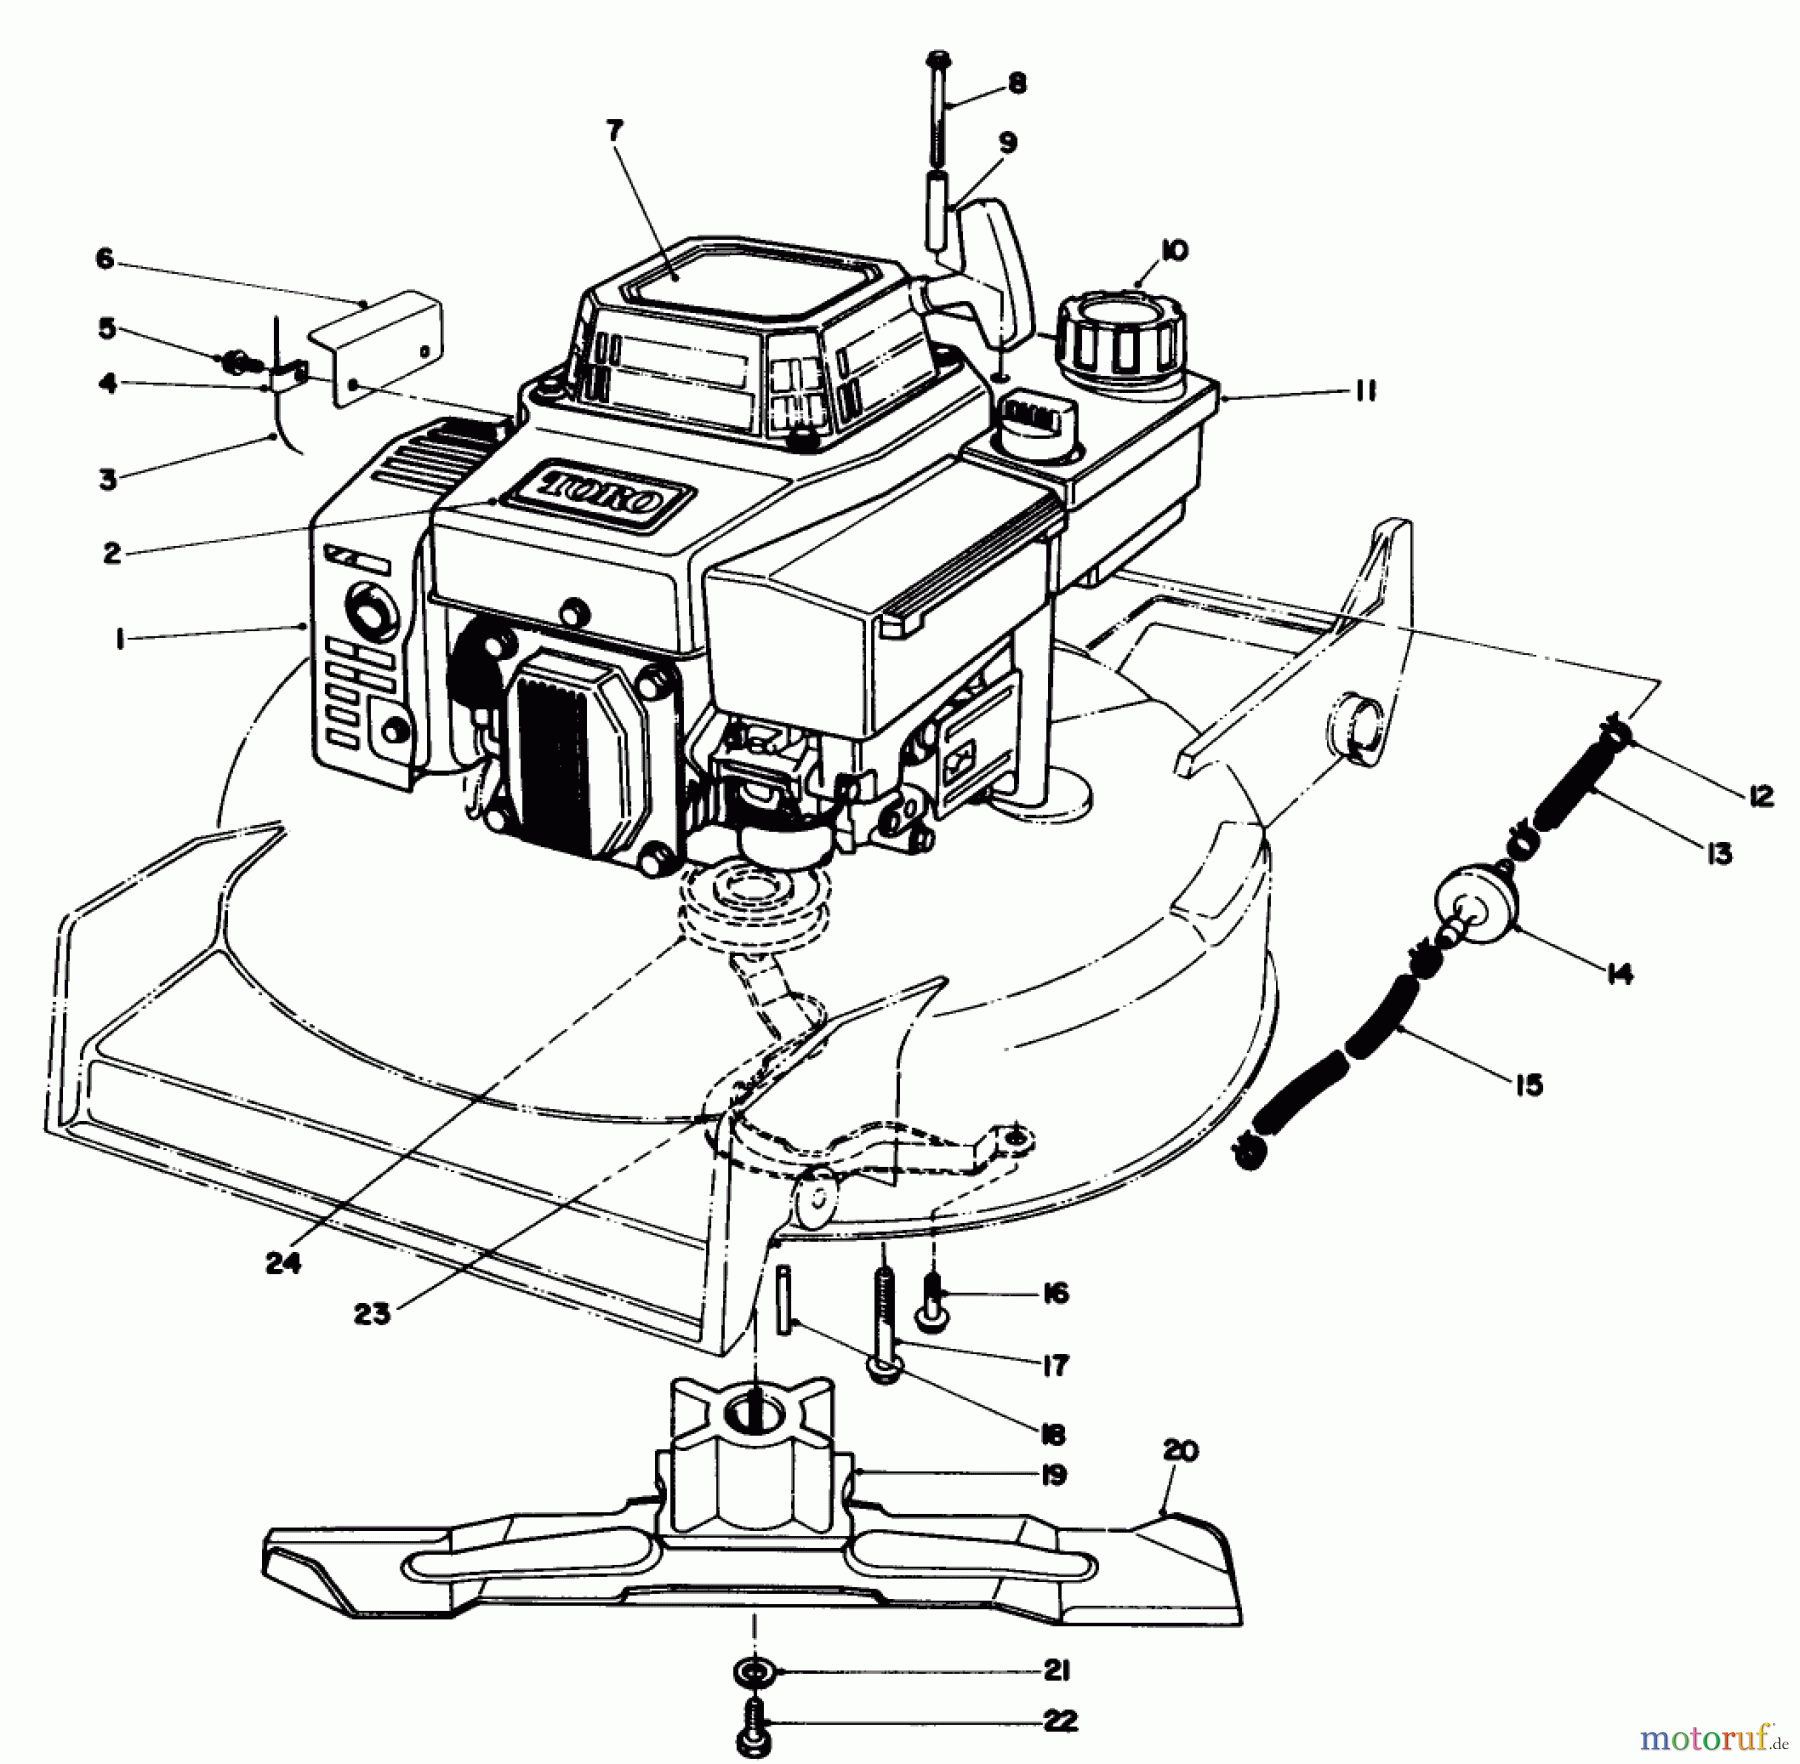  Toro Neu Mowers, Walk-Behind Seite 1 20626C - Toro Lawnmower, 1987 (7000001-7999999) ENGINE ASSEMBLY (MODEL VMG6)